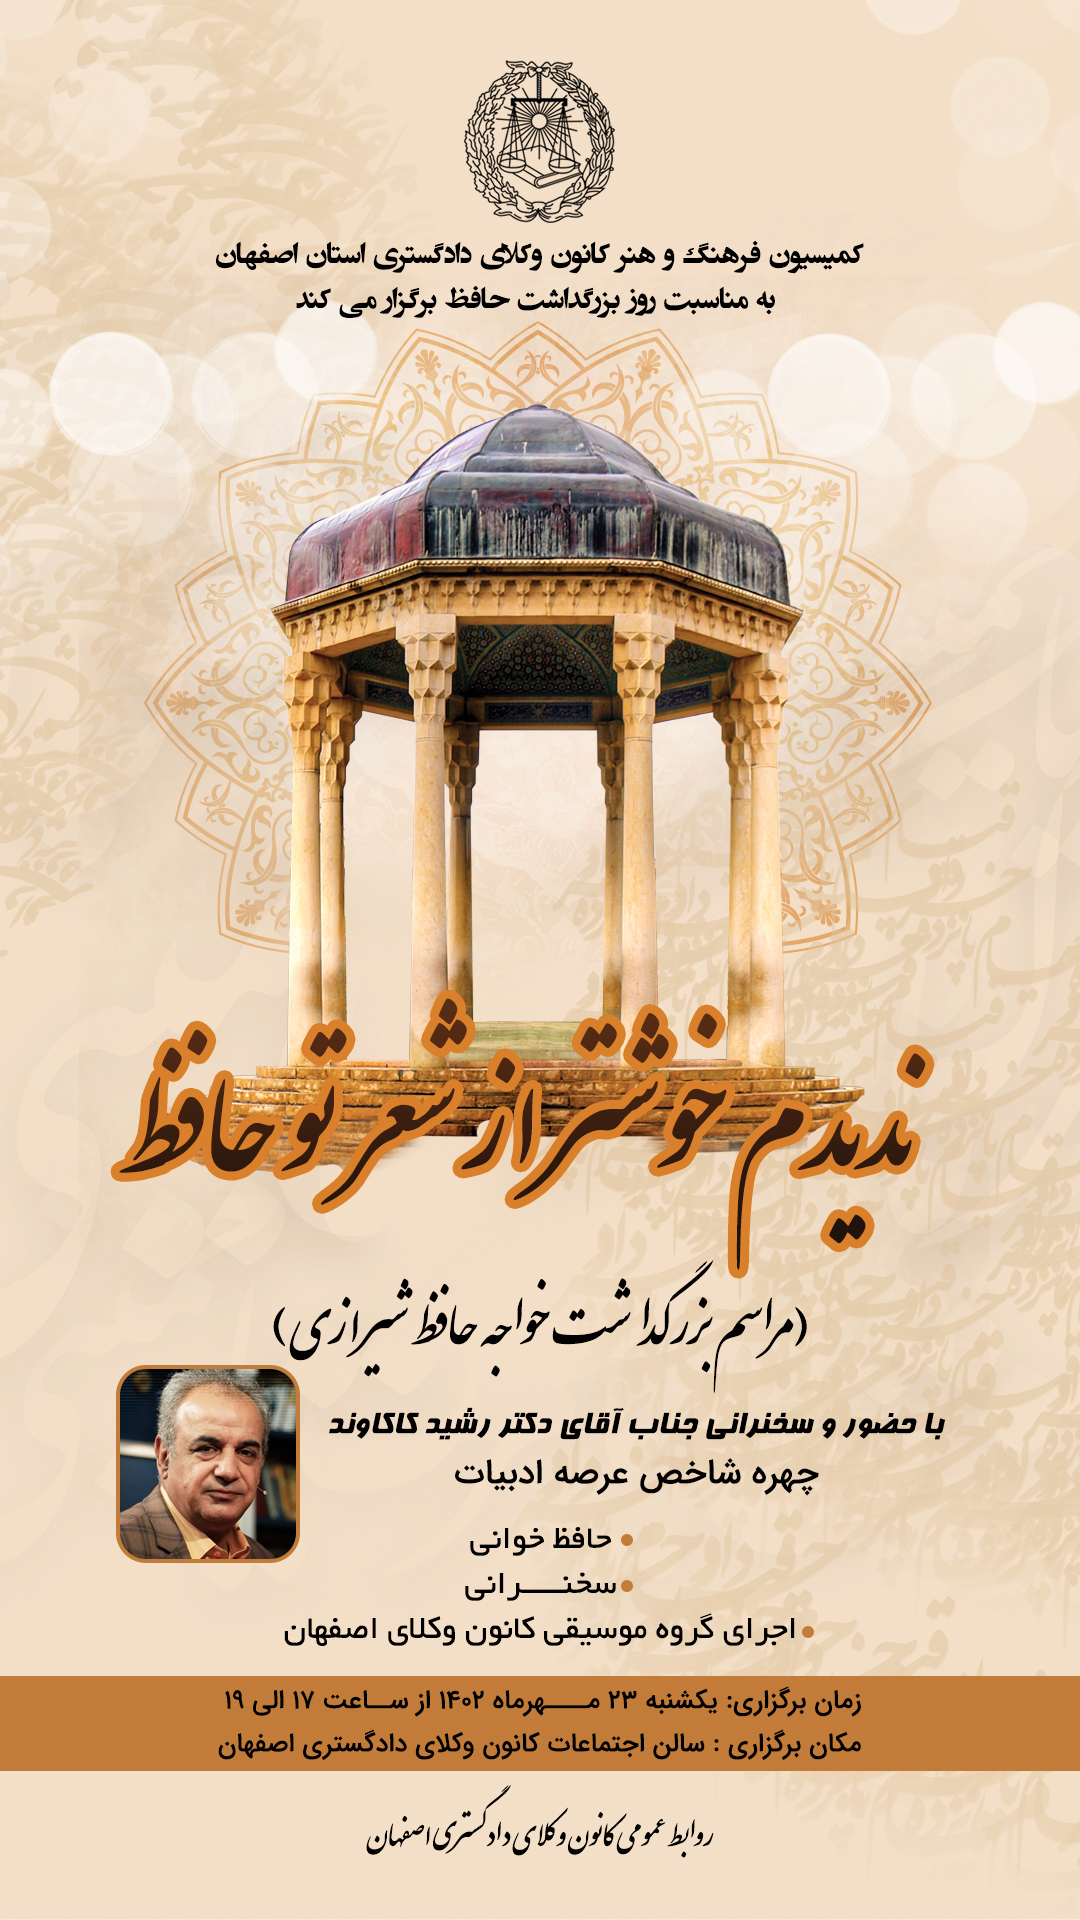 مراسم بزرگداشت خواجه حافظ شیرازی برگزار می شود